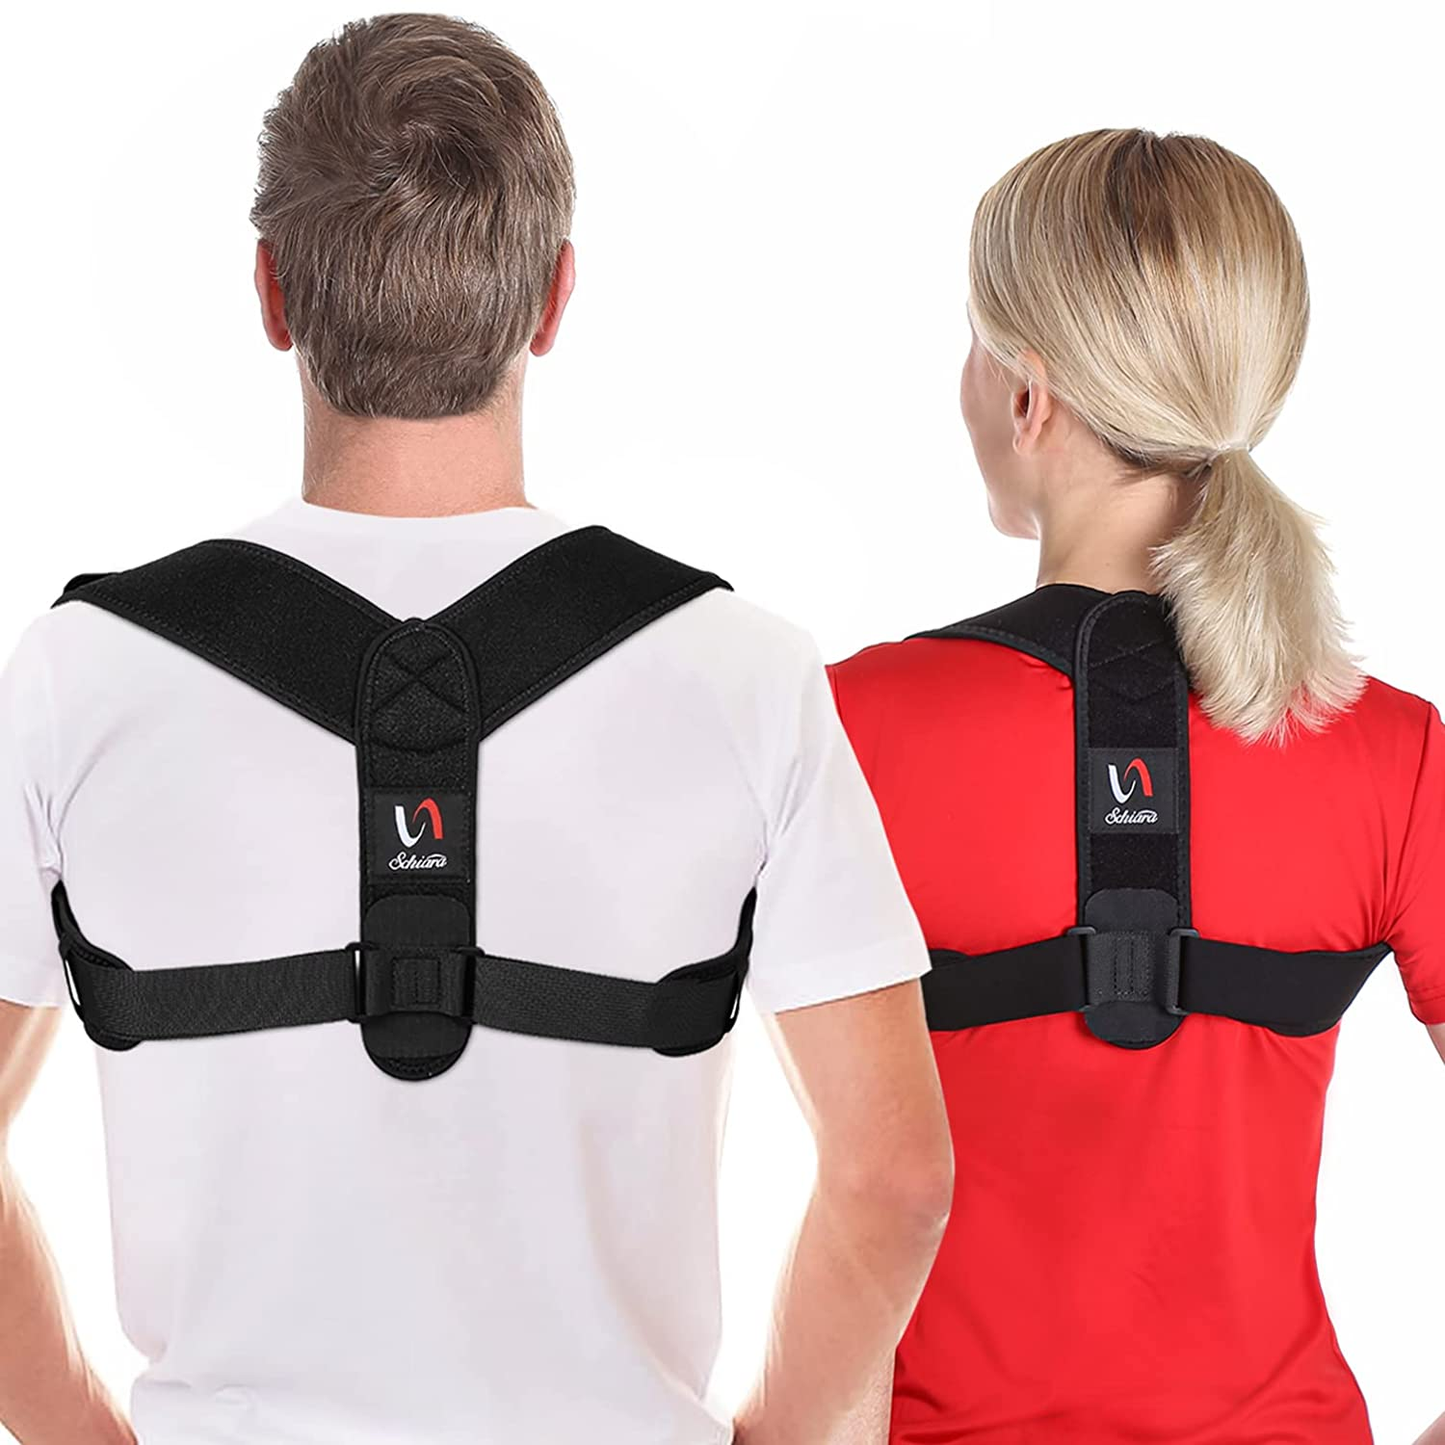 Schiara Posture Corrector for Men and Women - Comfortable Upper Back Brace, Adjustable Back Straightener Support for Neck, Back & Shoulder